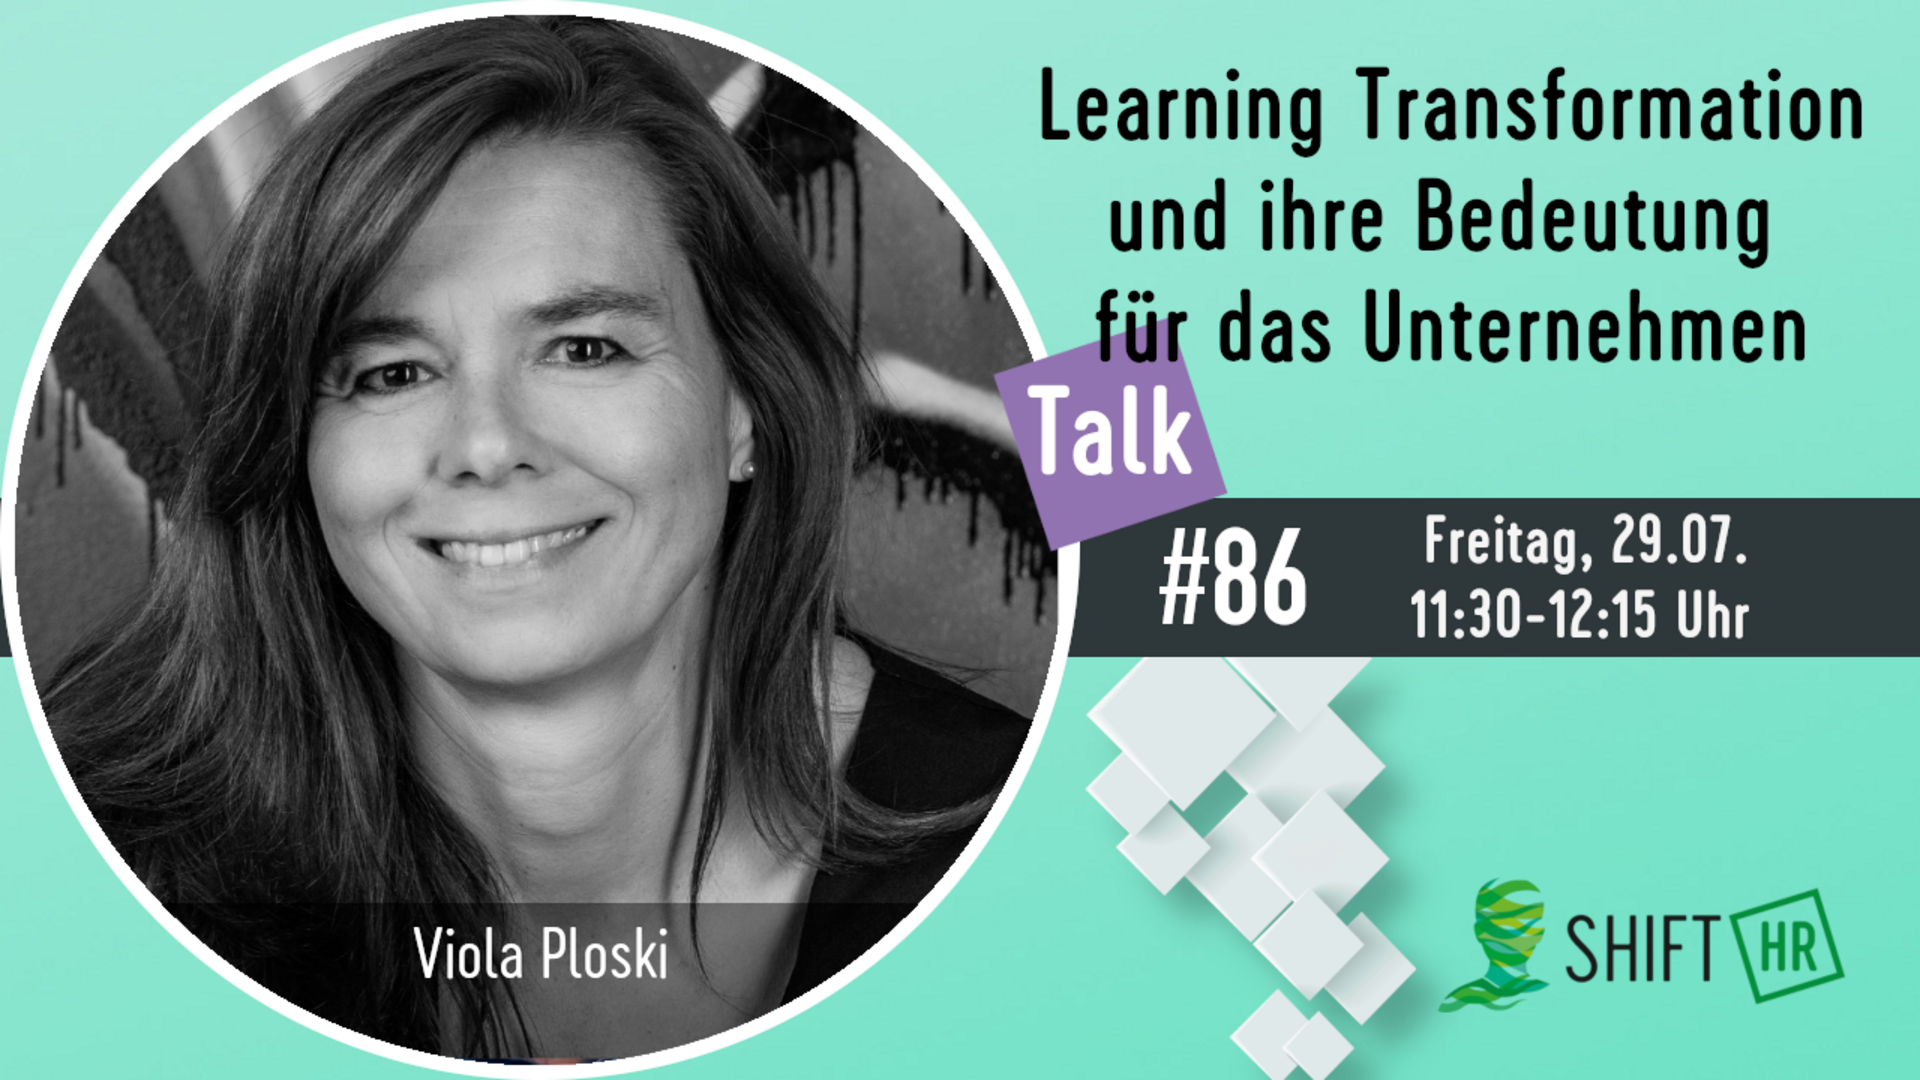 Im Gespräch mit Viola Ploski zur Learning Transformation & ihrer Bedeutung für das Unternehmen